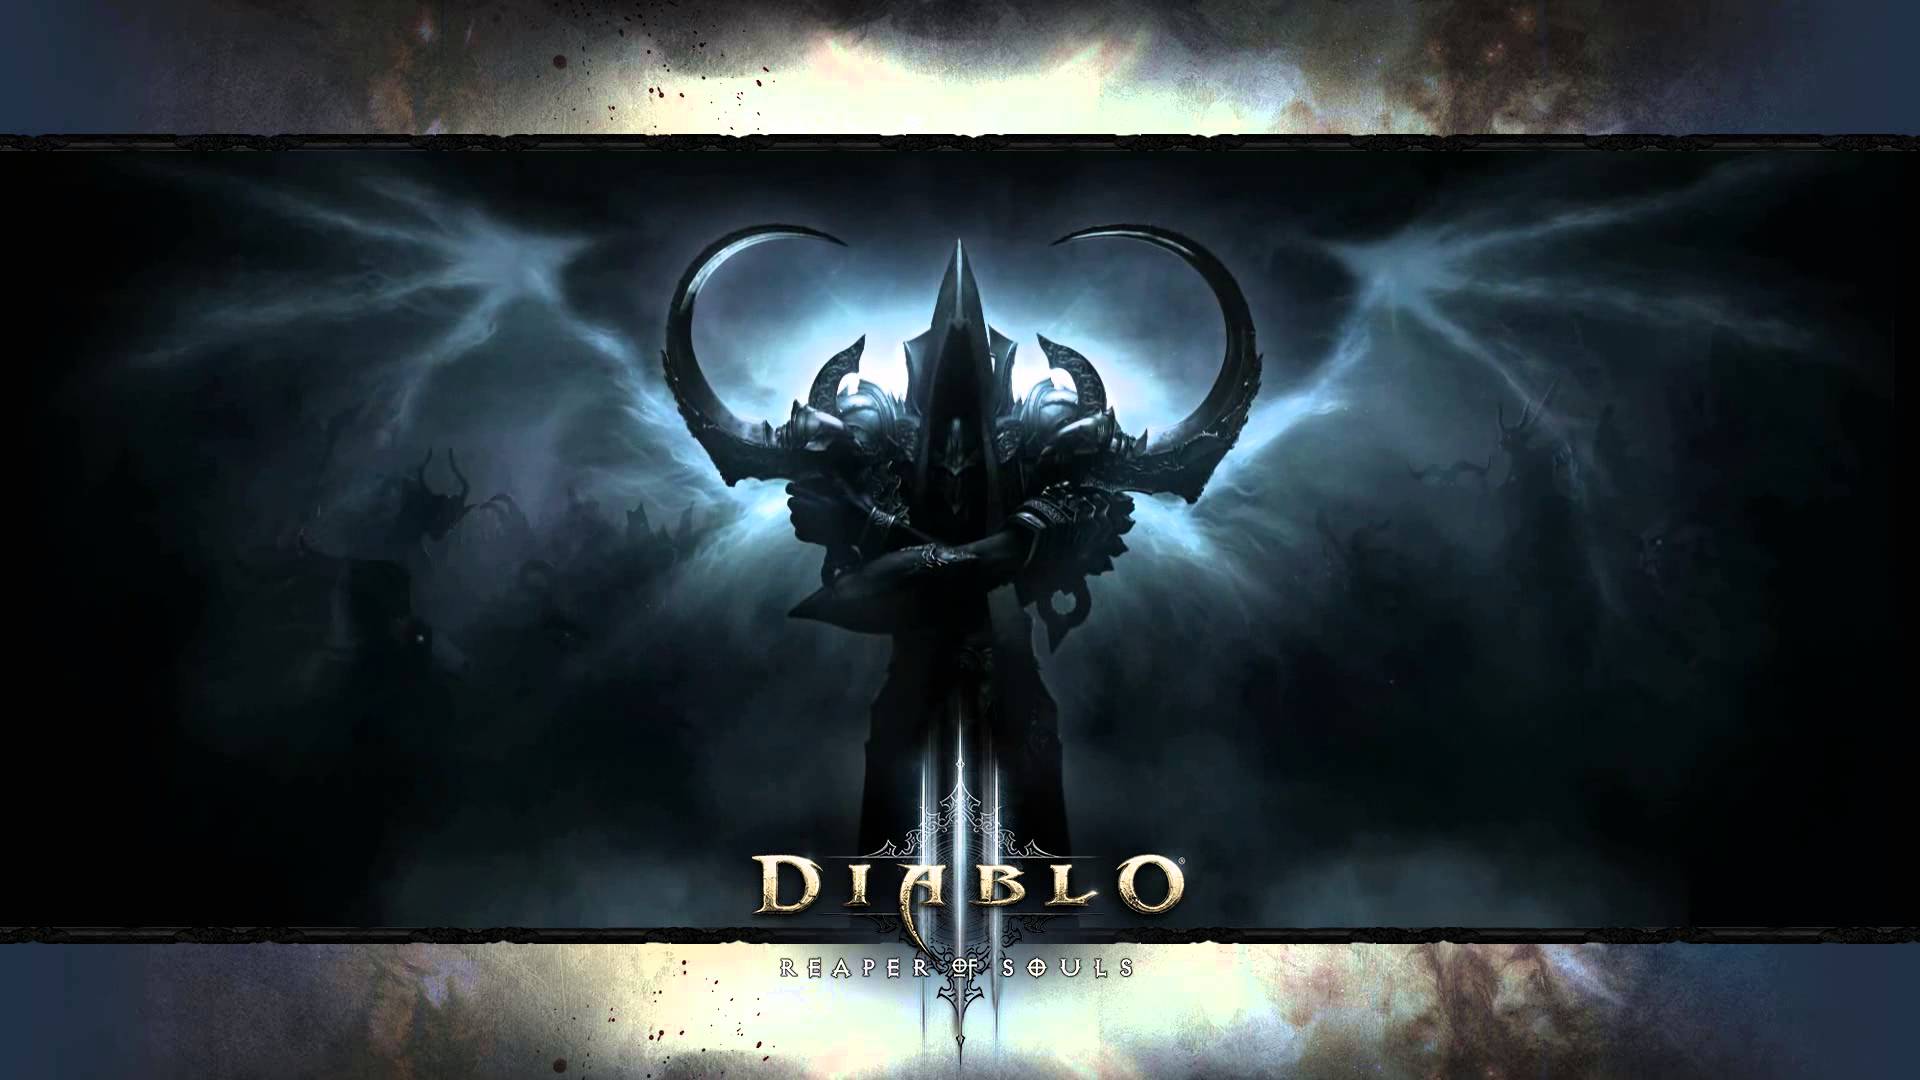 High Resolution Wallpaper | Diablo III: Reaper Of Souls 1920x1080 px